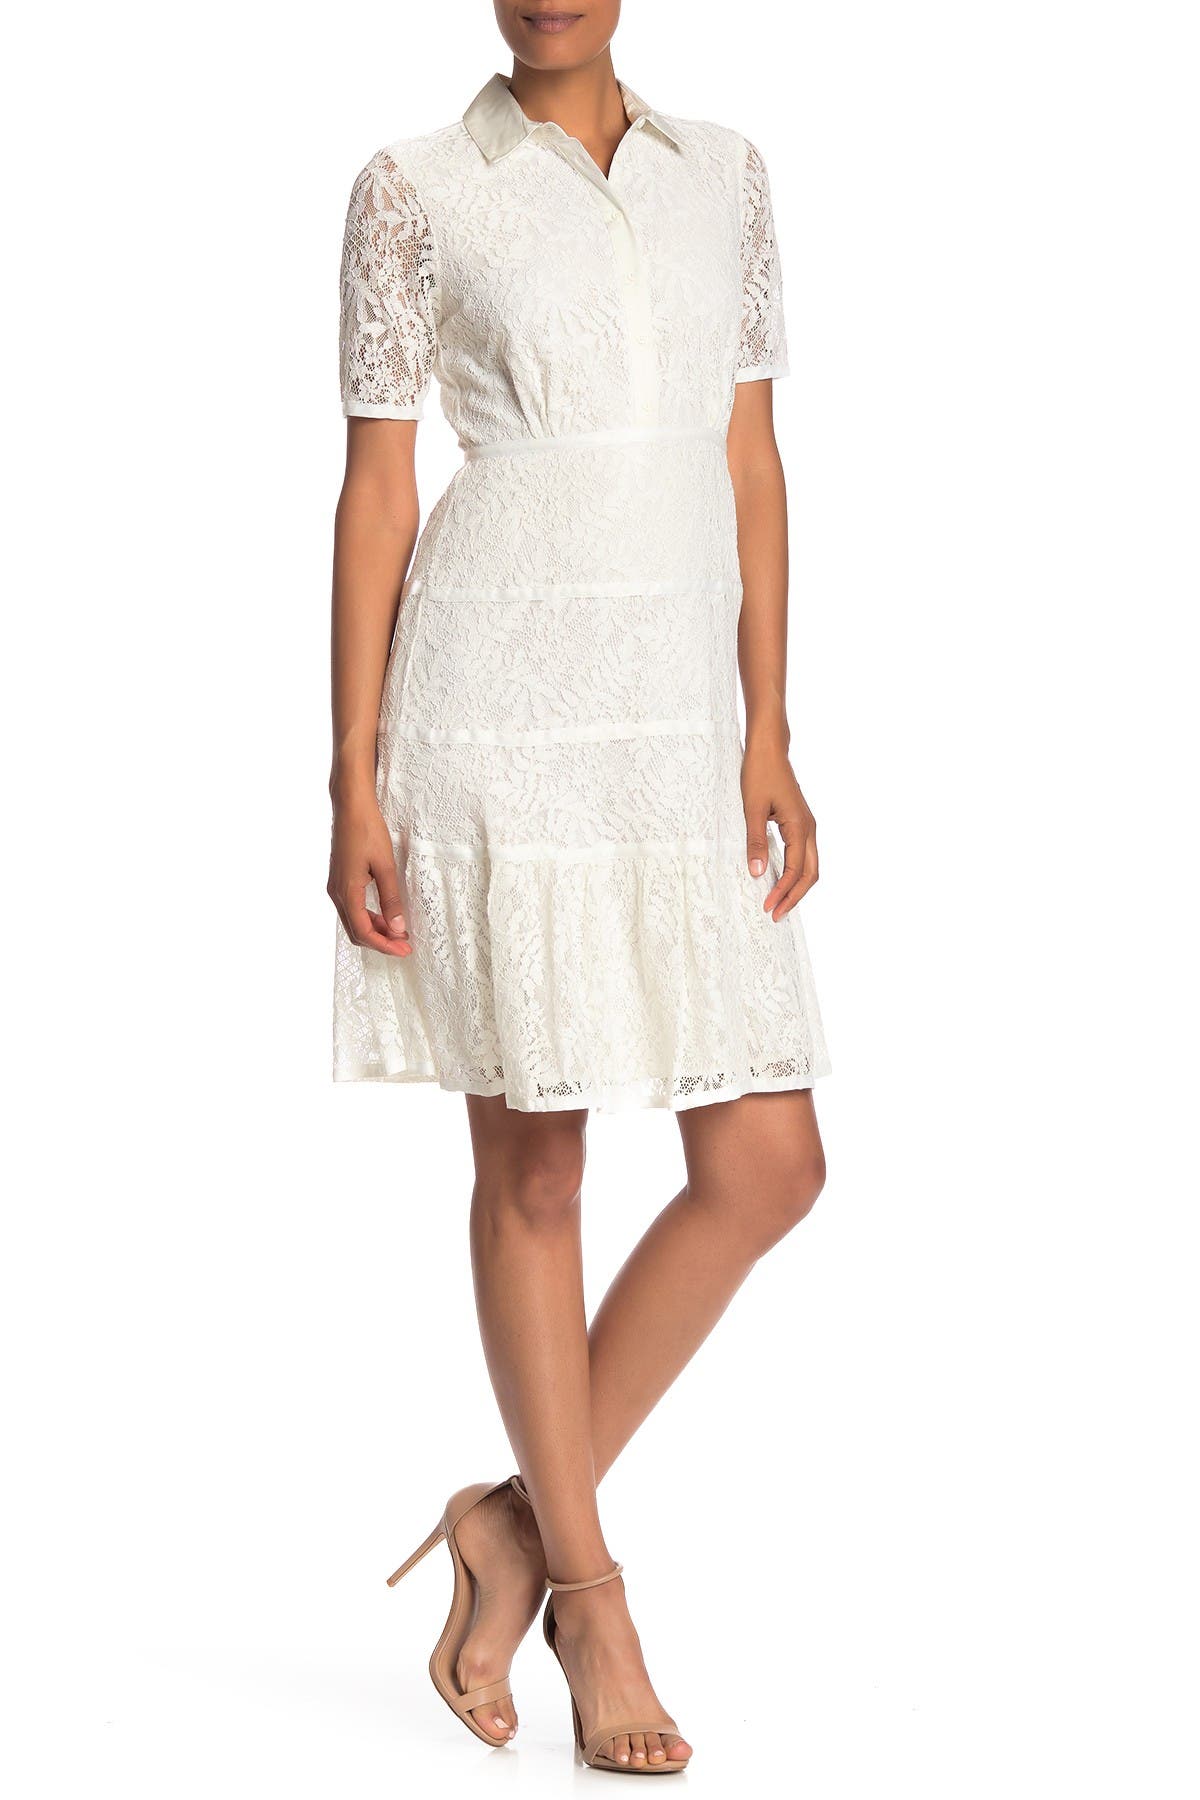 nanette lepore white lace dress